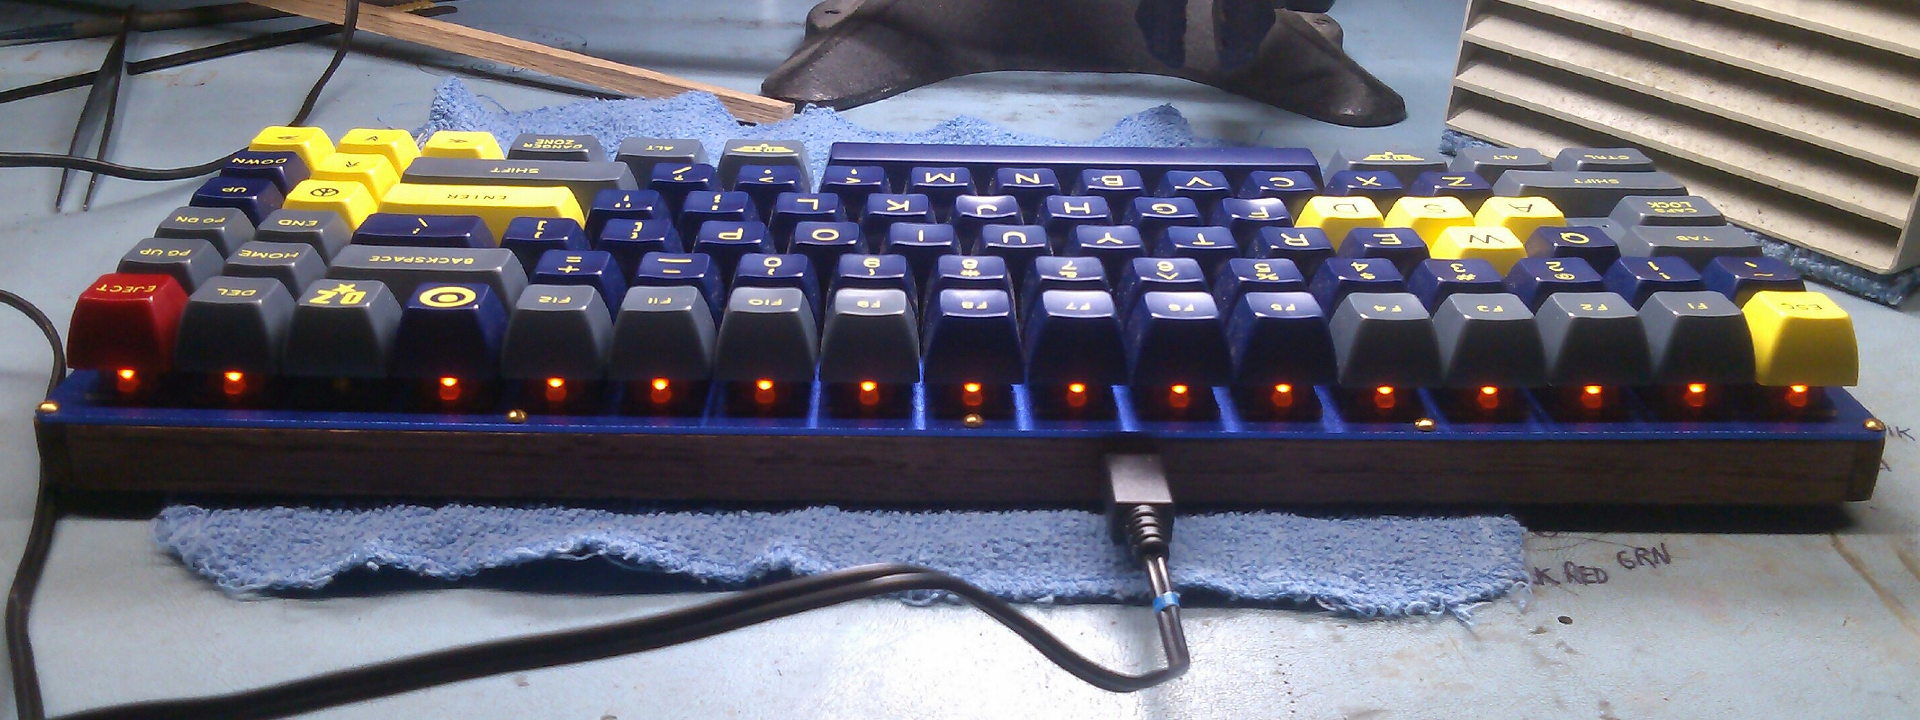 Keyboard75+1_LEDsLitBack.jpg